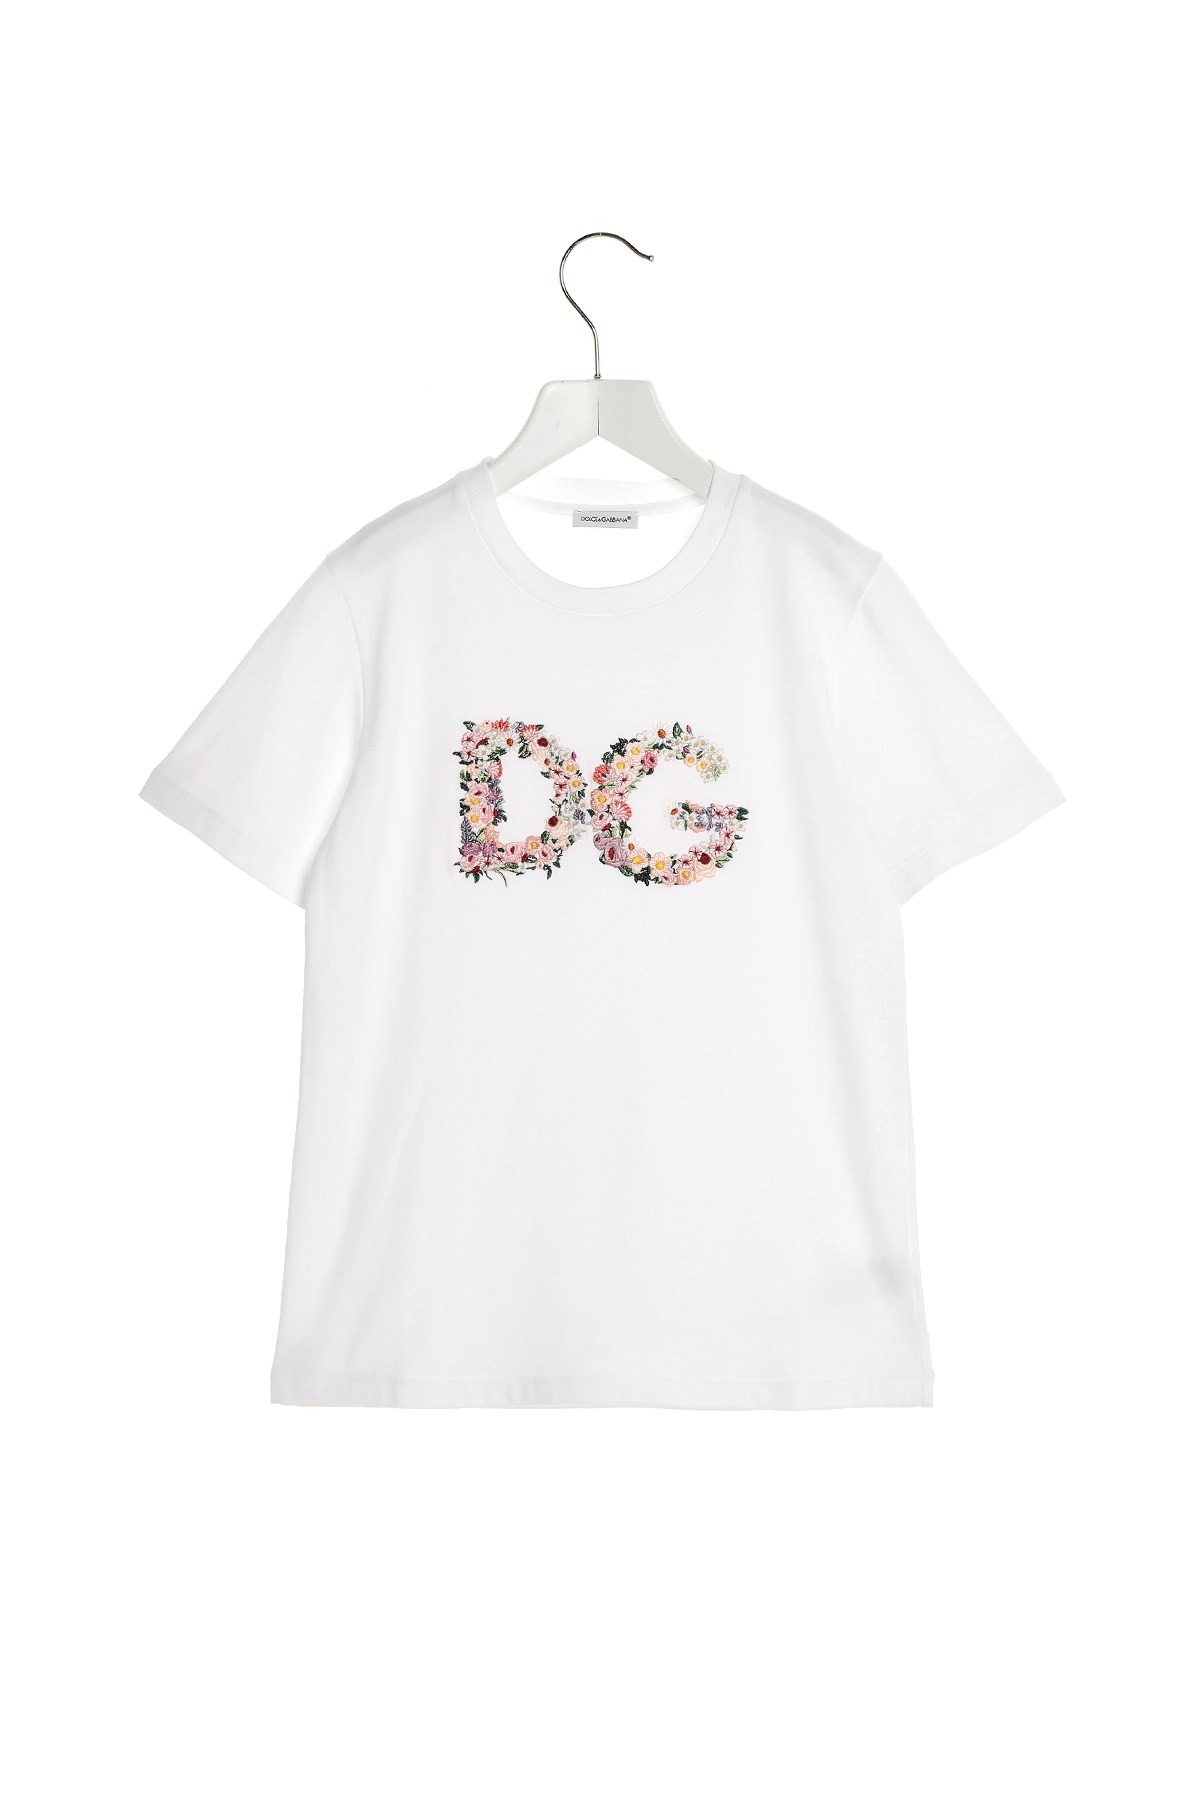 DOLCE & GABBANA Logo Embroidery T-Shirt